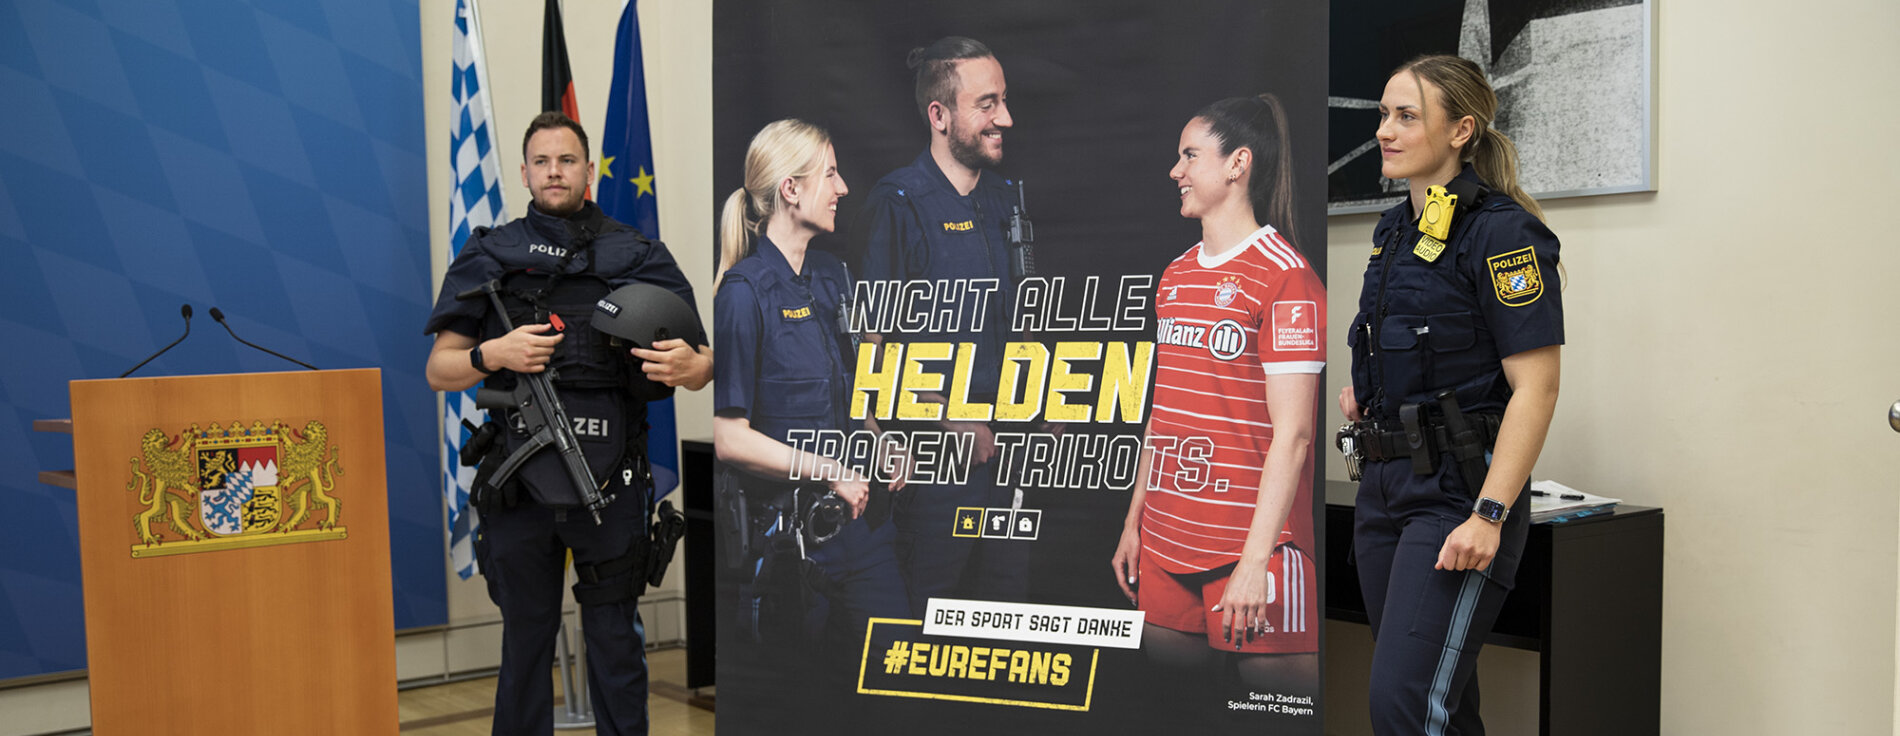 Polizistin und Polizist mit Schutzausrüstung neben Rollup zur Kampagne #EureFans für mehr Respekt für Einsatzkräfte